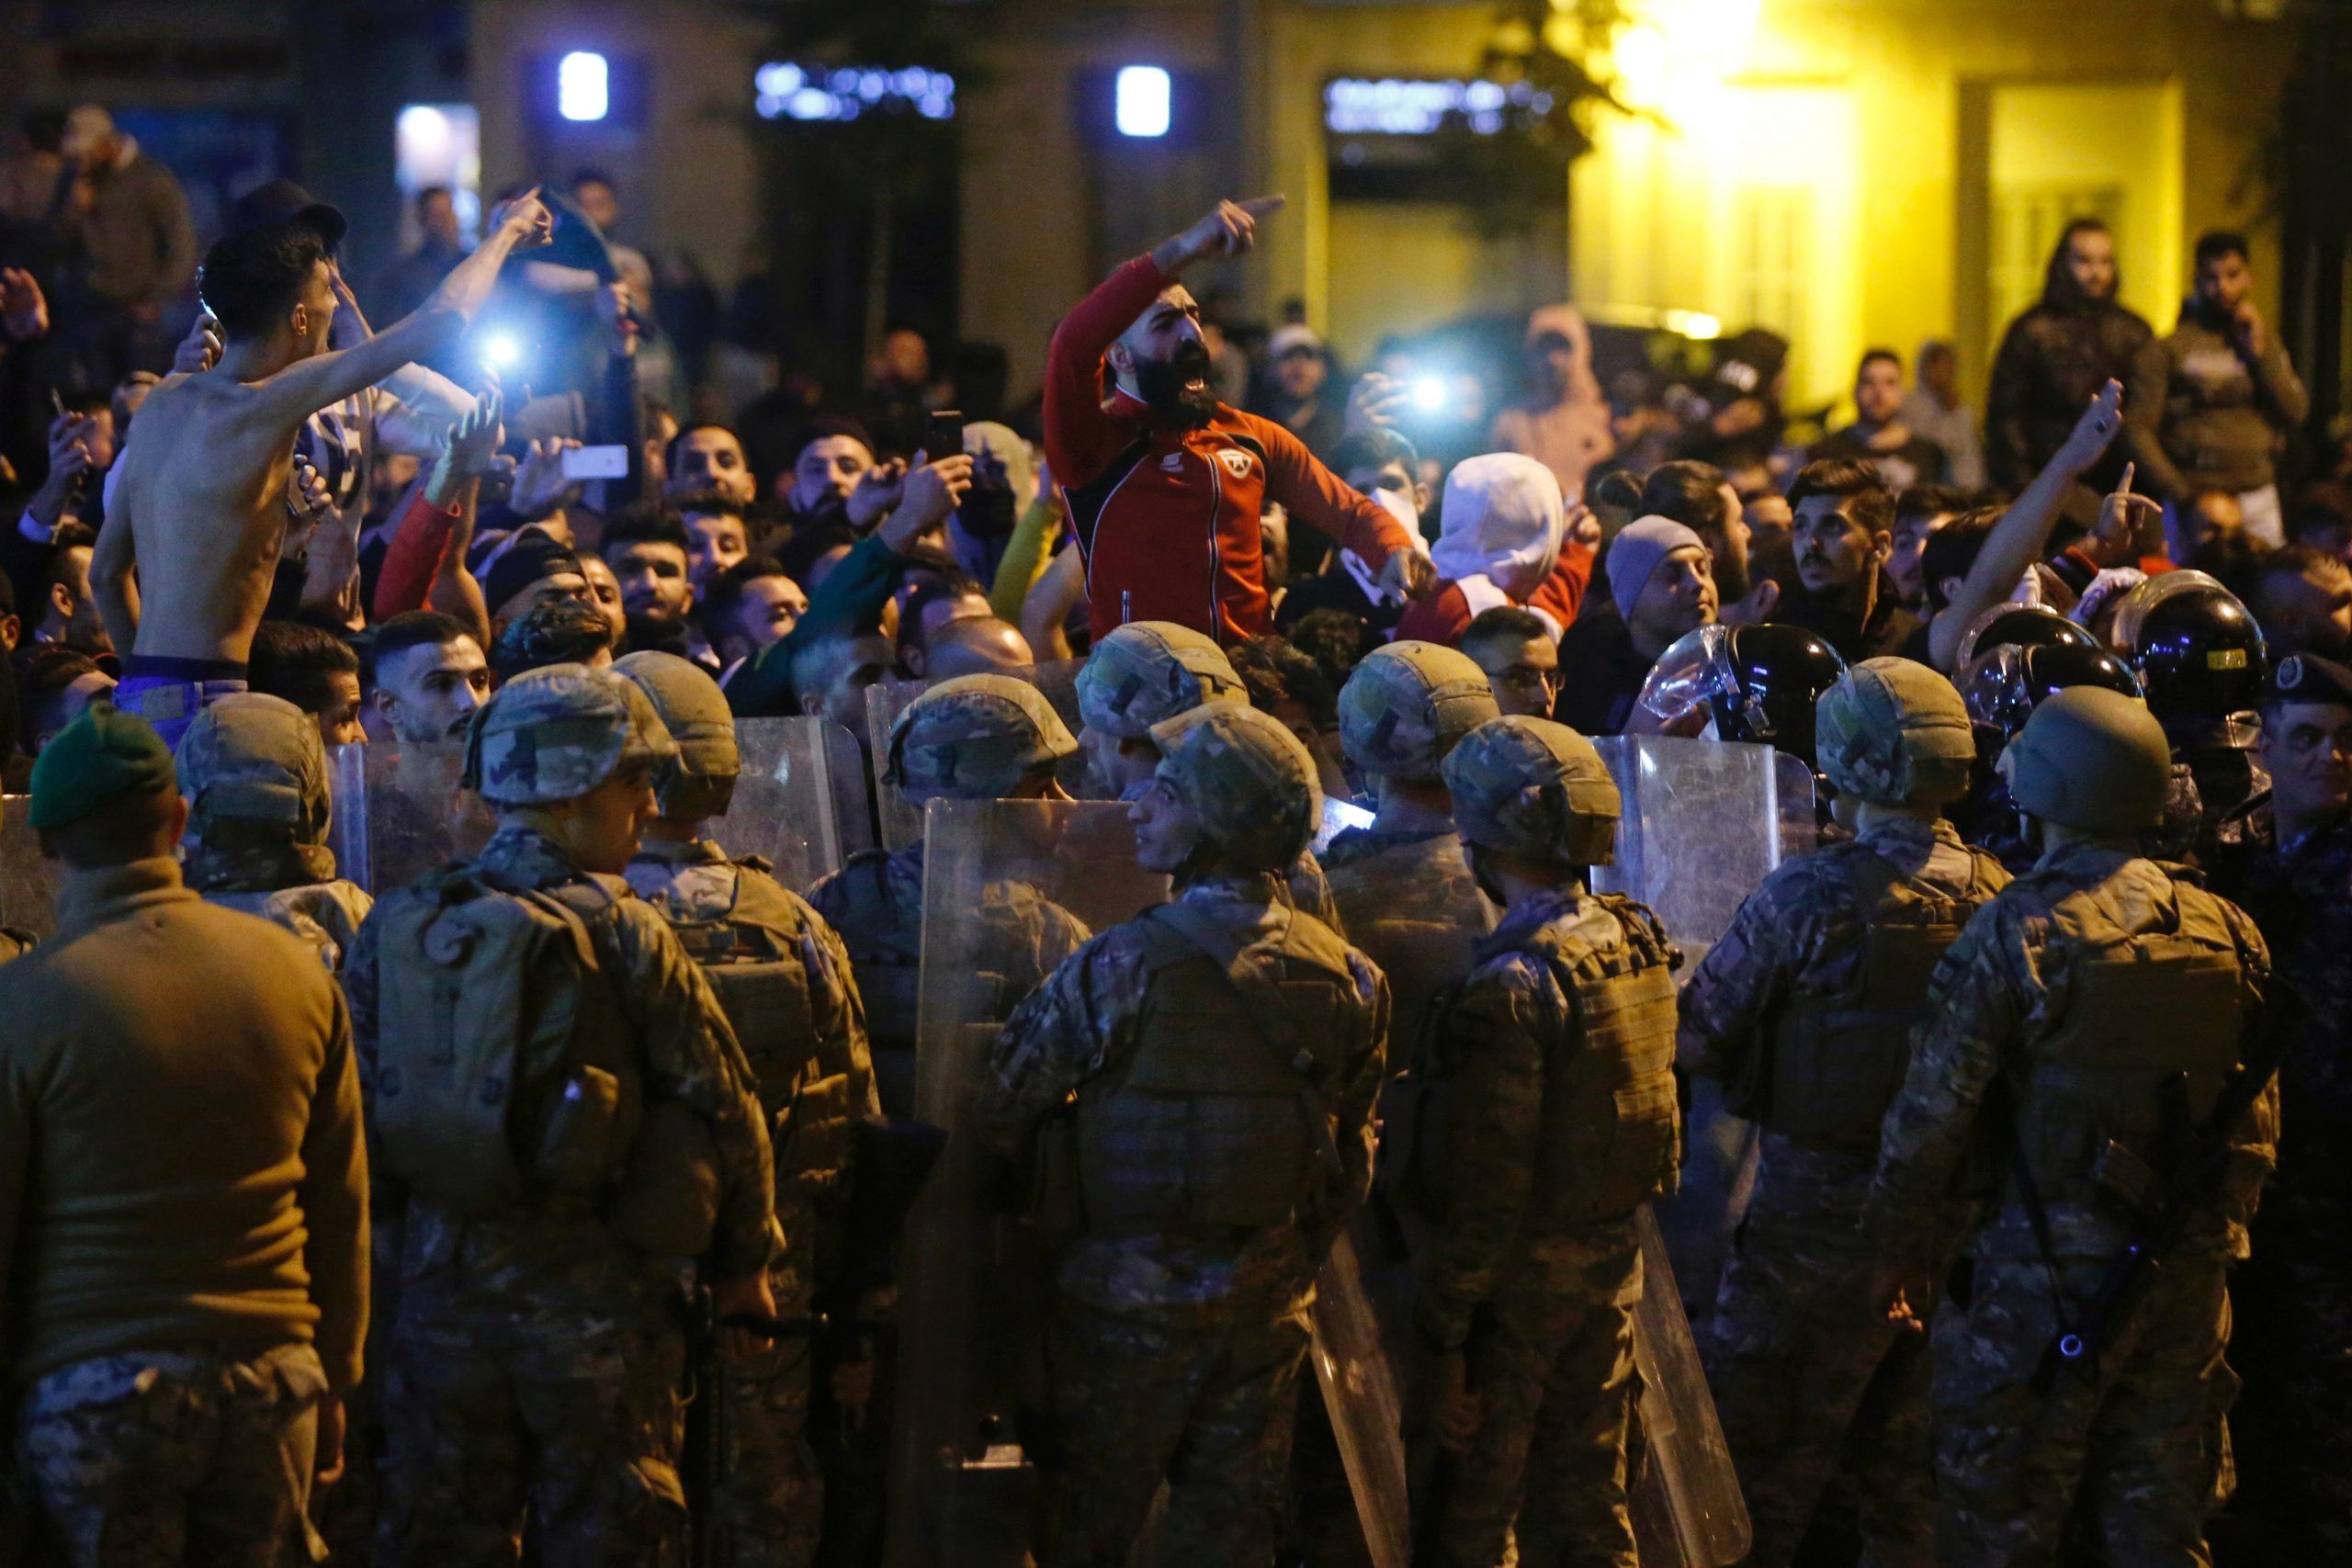 سقوط جرحى خلال تفريق التظاهرات في محيط مجلس النواب اللبناني